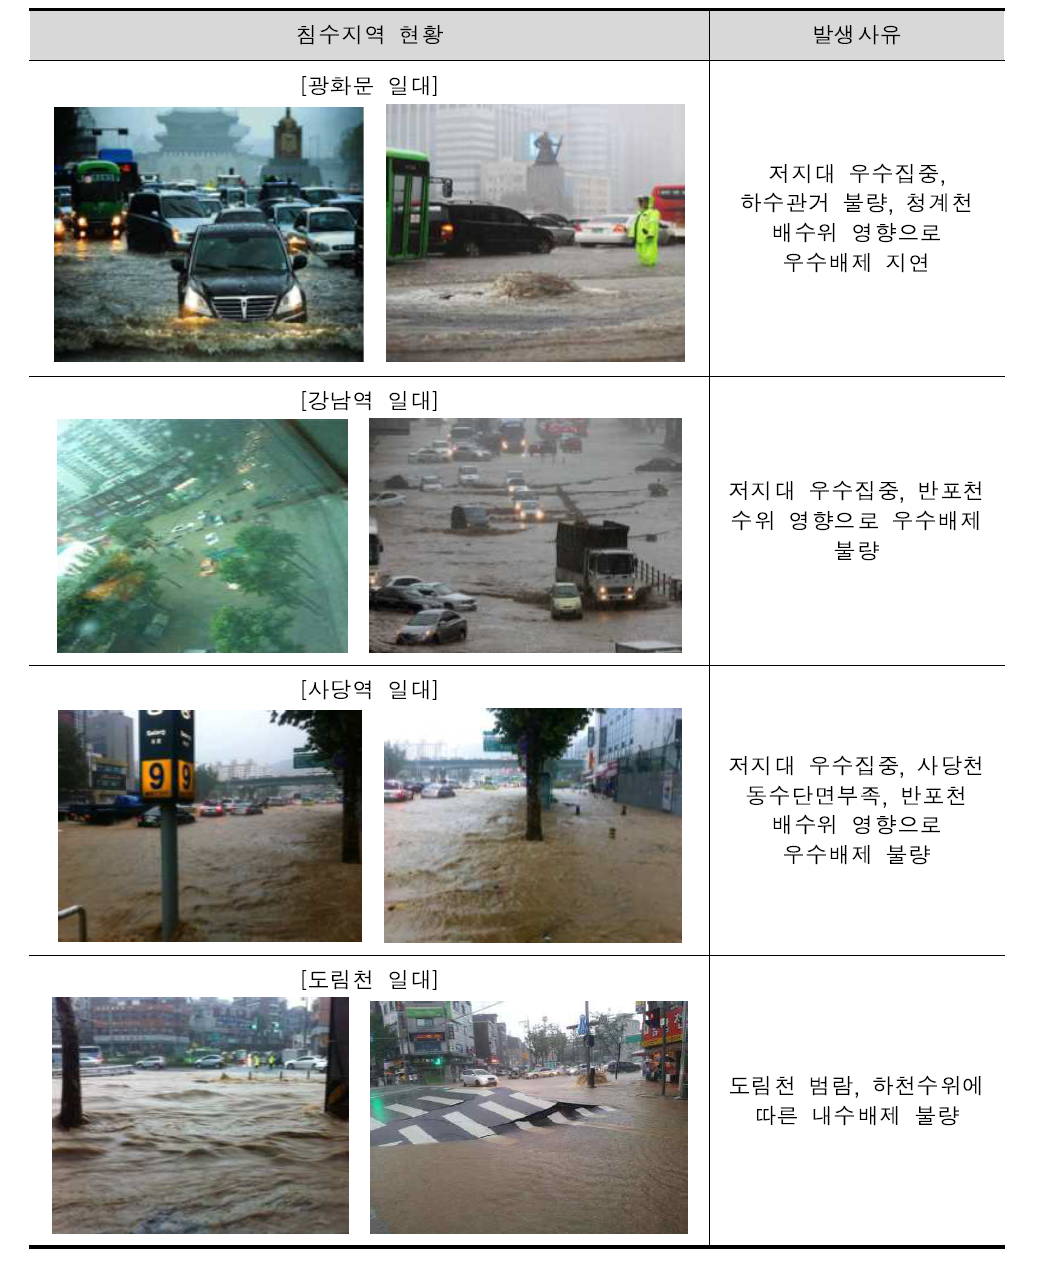 2011년 서울시 주요침수 현황